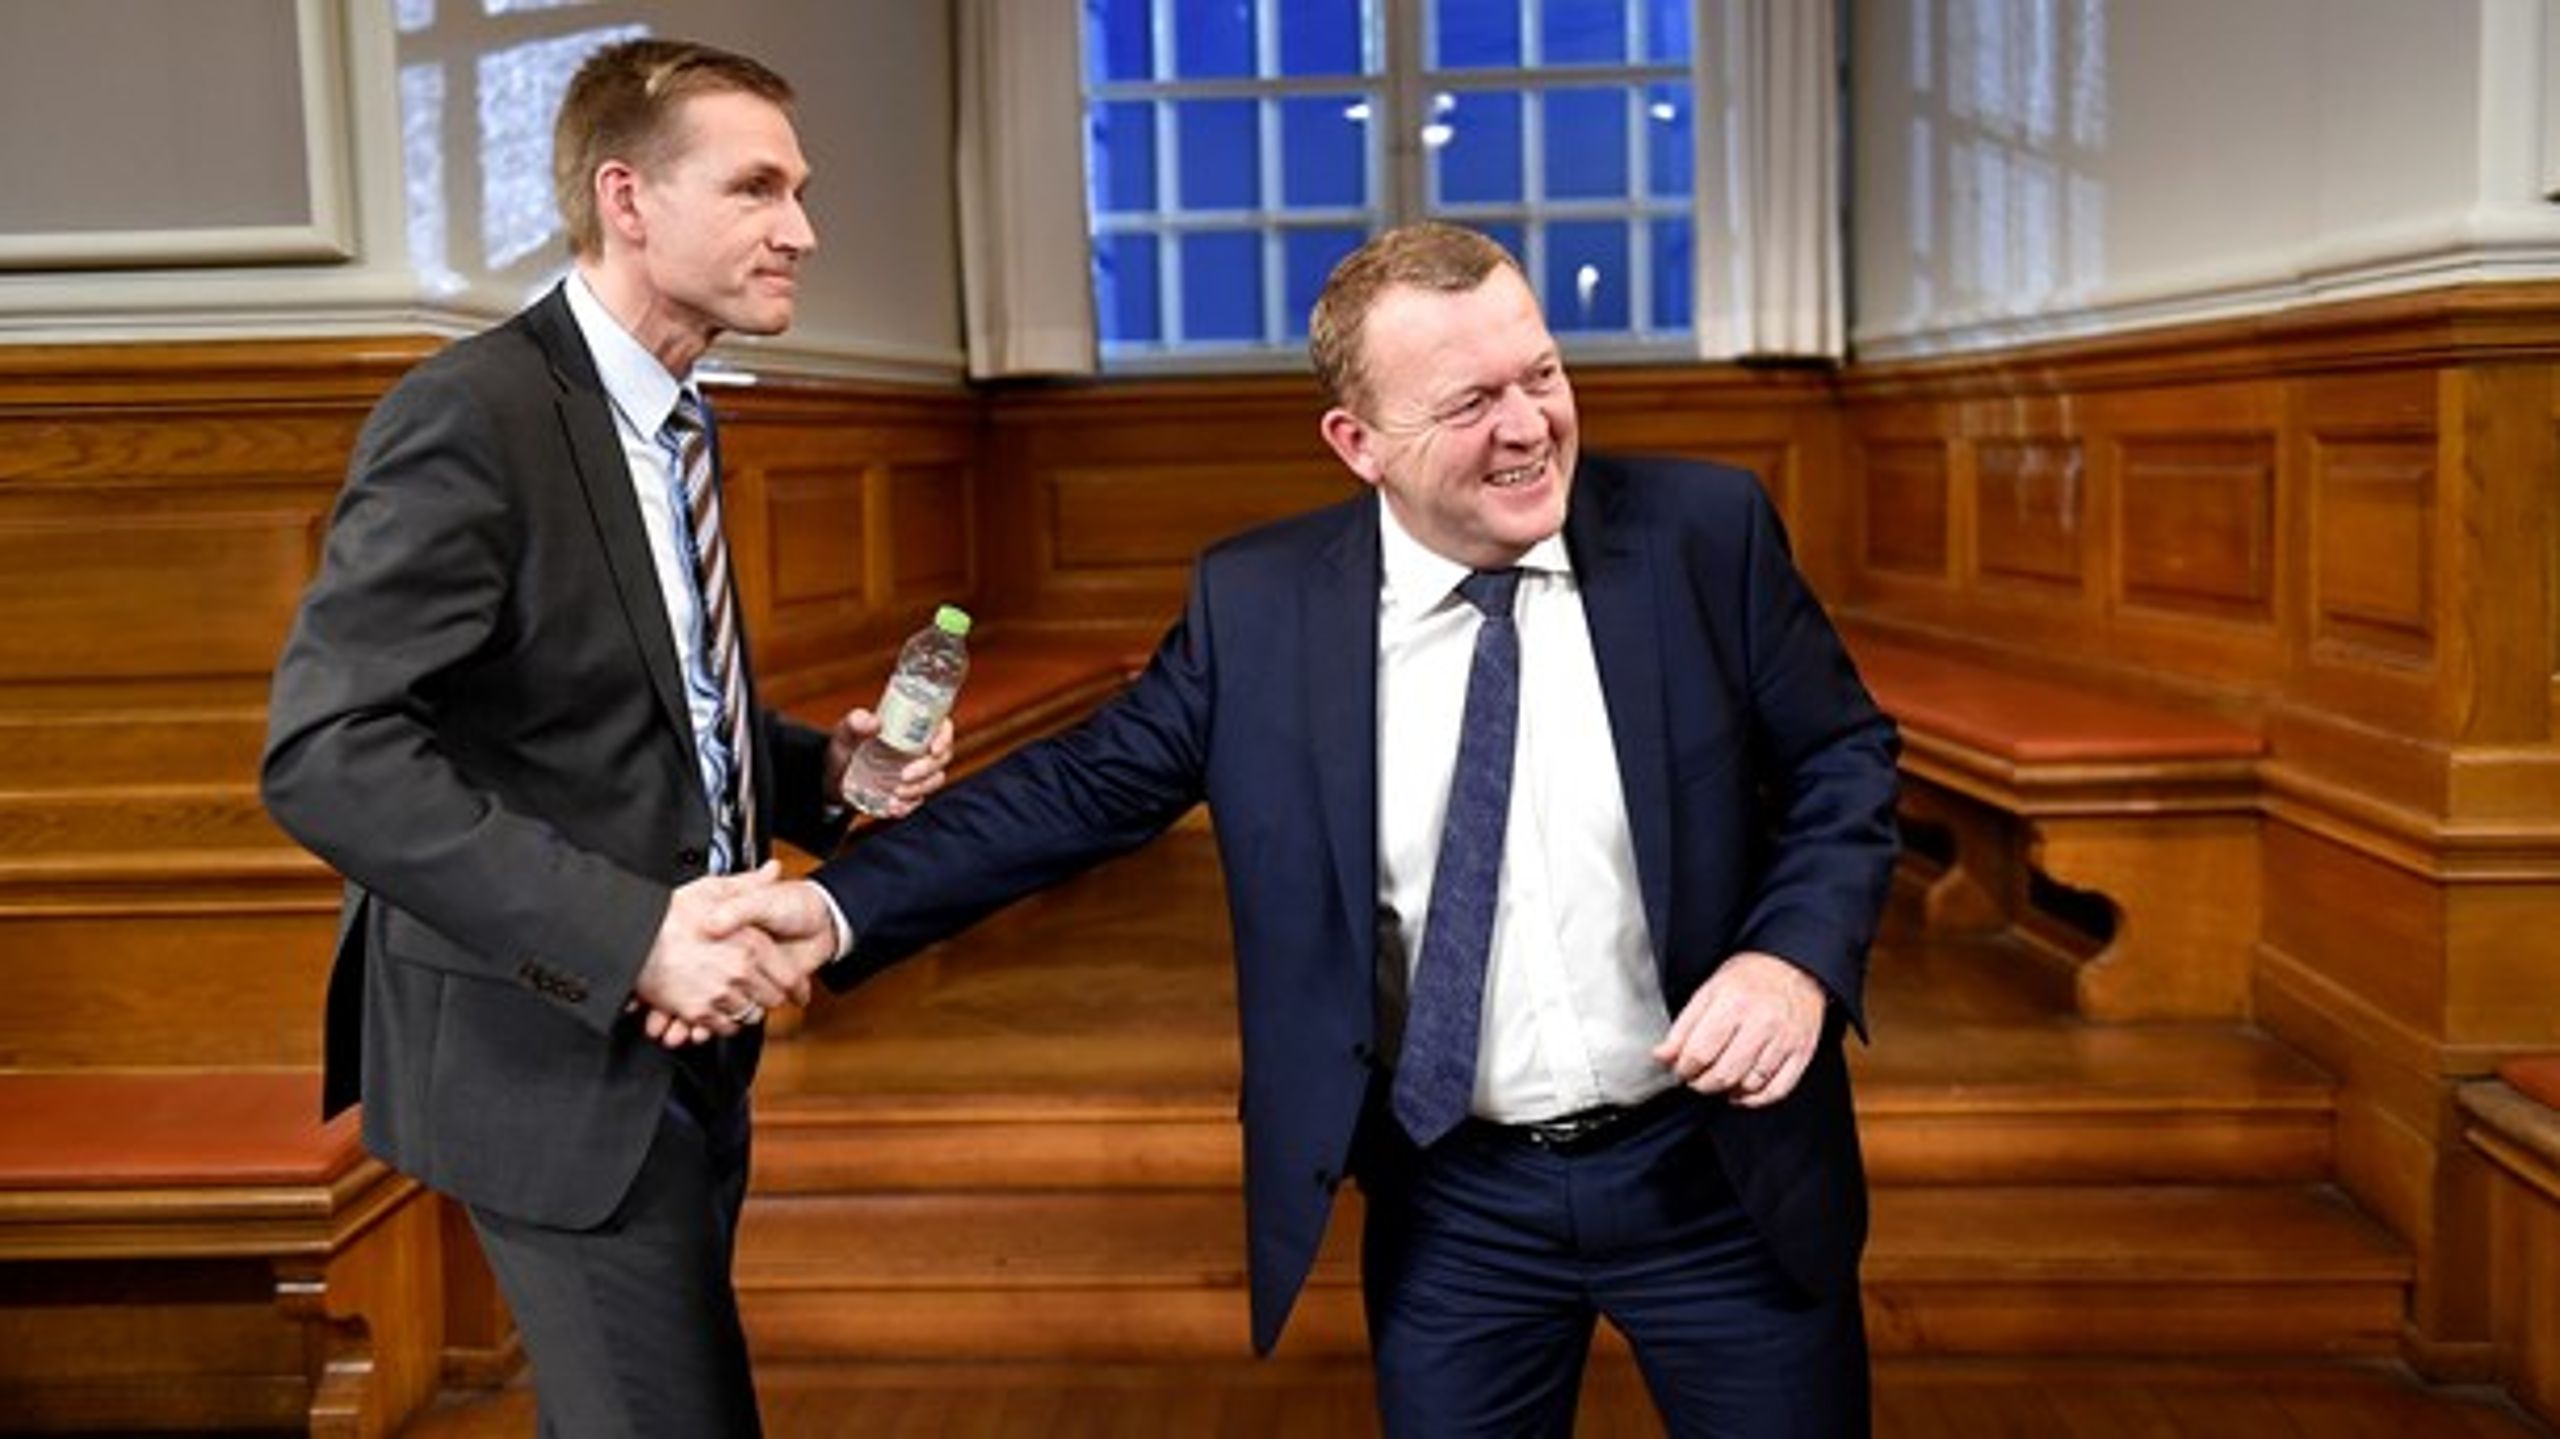 HÅNDSLAG: Kristian Thulesen Dahl (DF) og Lars Løkke Rasmussen (V) til partilederrunde på Christiansborg efter danskernes nej ved afstemningen om retsforbeholdet i 2015.